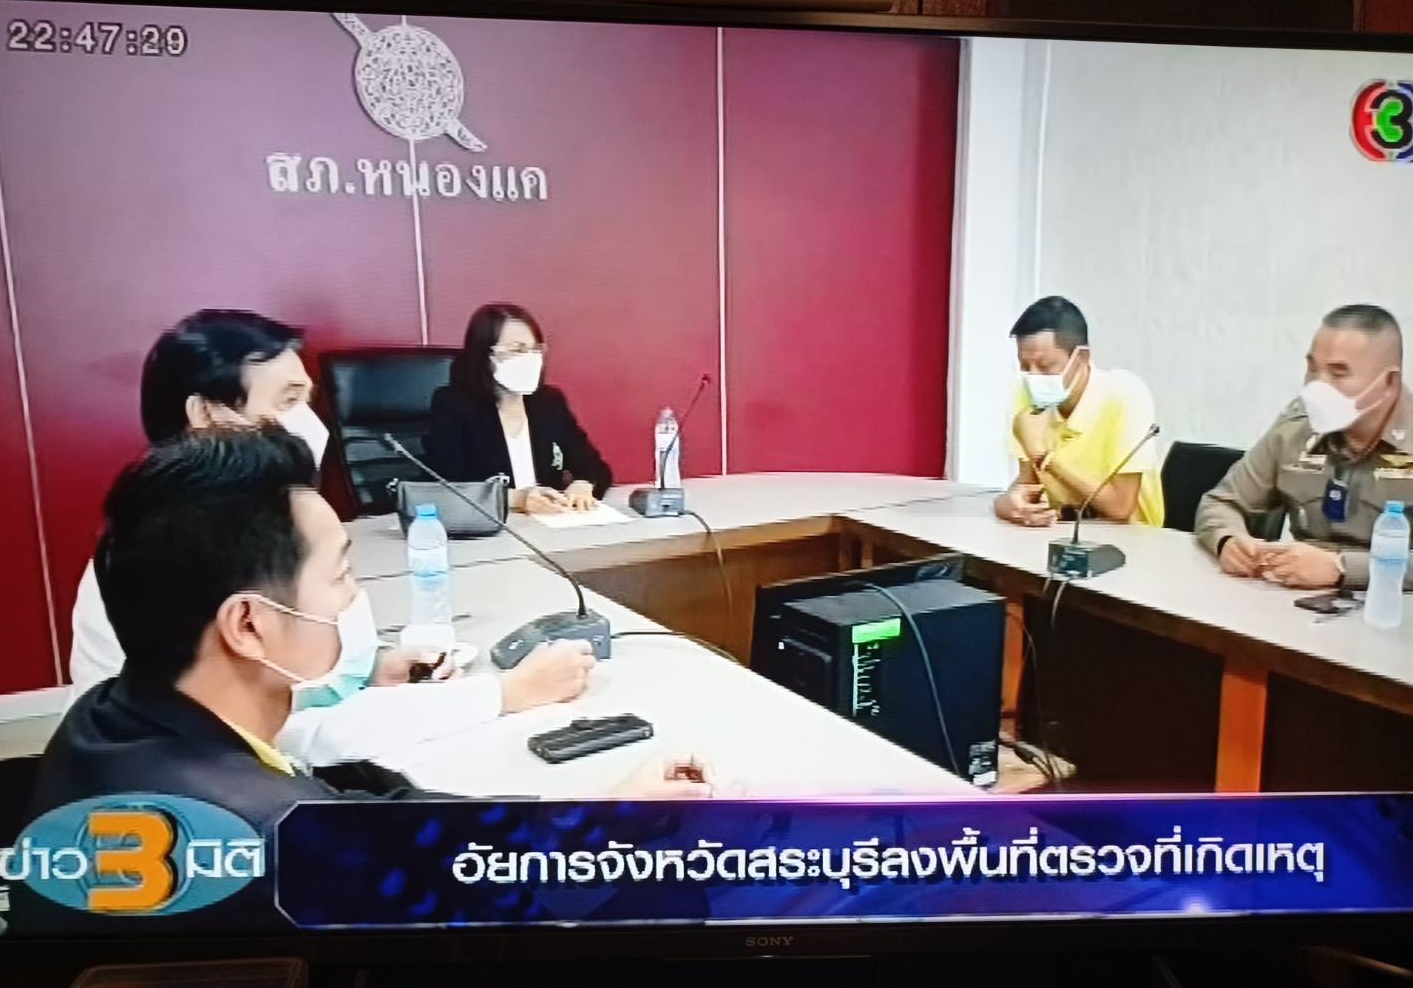 อัยการสระบุรีตรวจที่เกิดเหตุบันทึกพยานหลักฐาน ‘โลกทัศน์ใหม่อัยการไทย’ ทุกจังหวัดทำได้ใน’คดีสำคัญ’